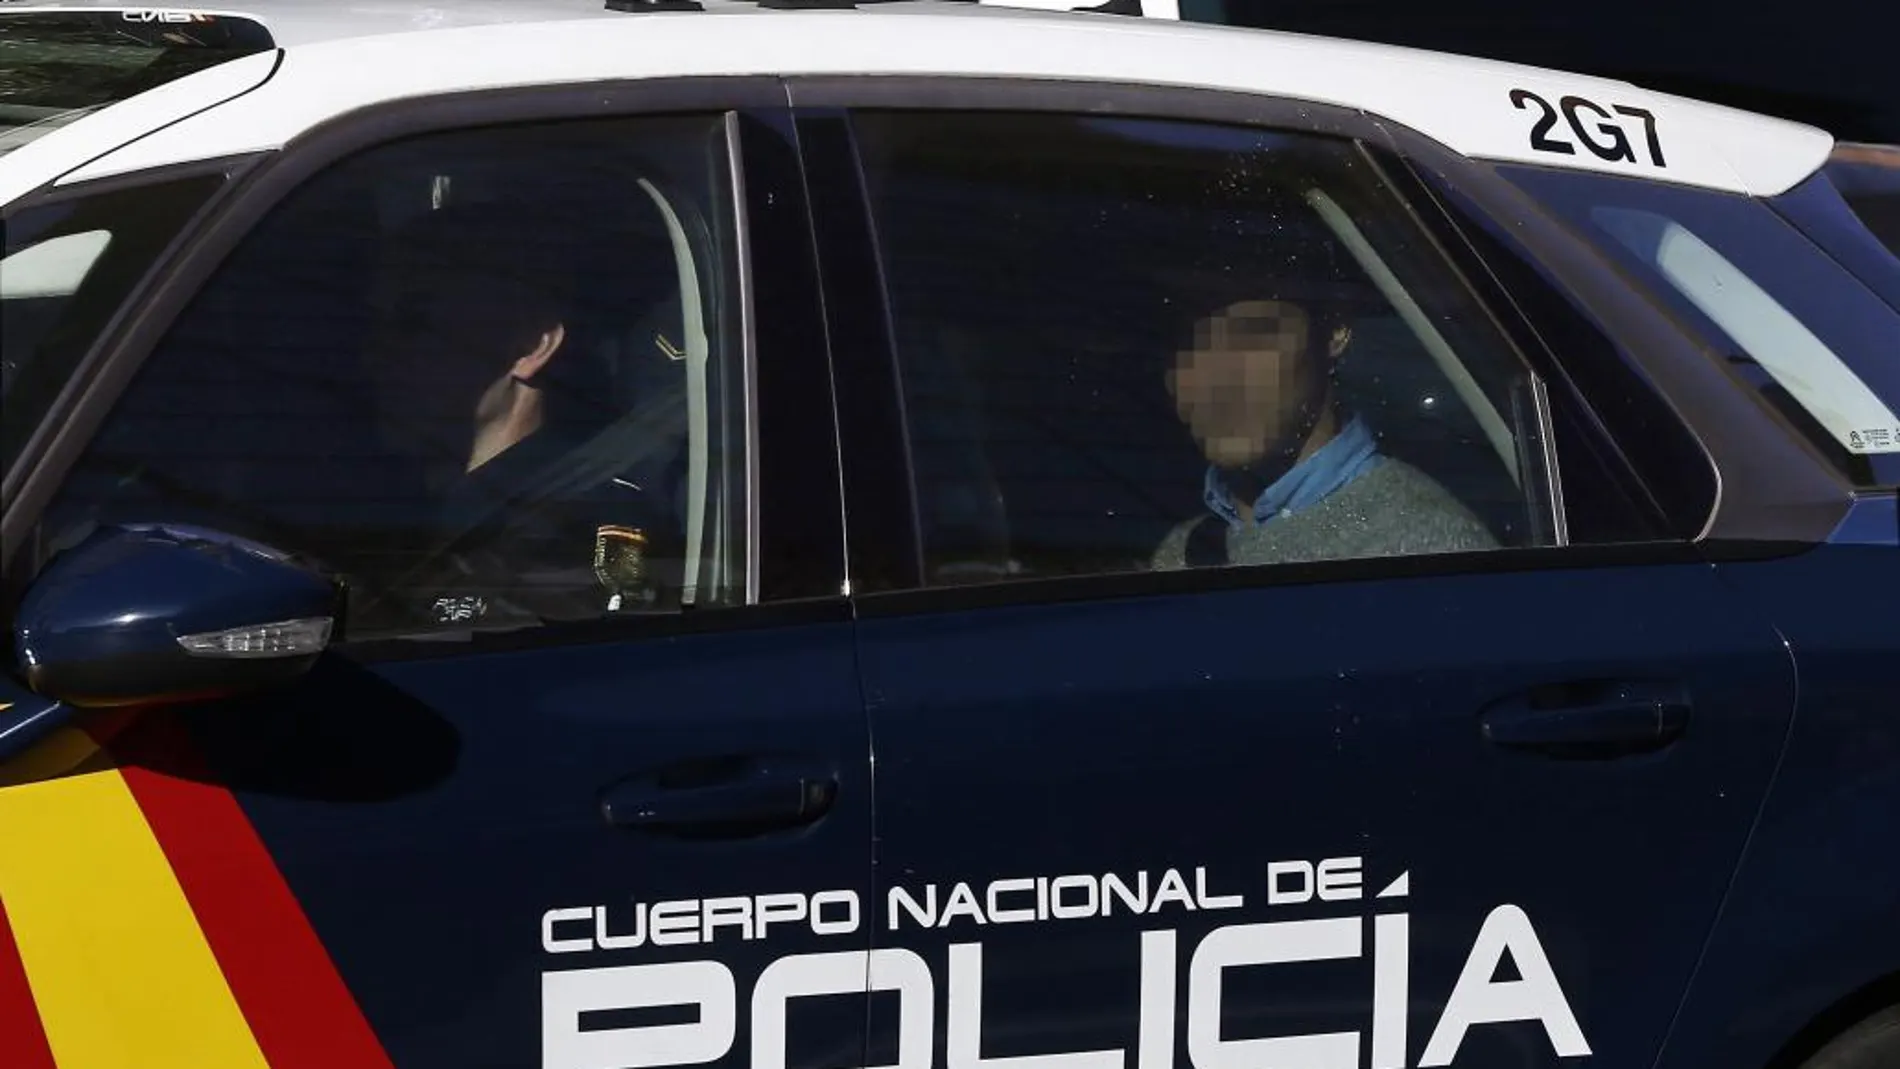 Imagen en el interior de un vehículo policial de Alfonso Cabezuelo, militar de la UME, uno de los acusados